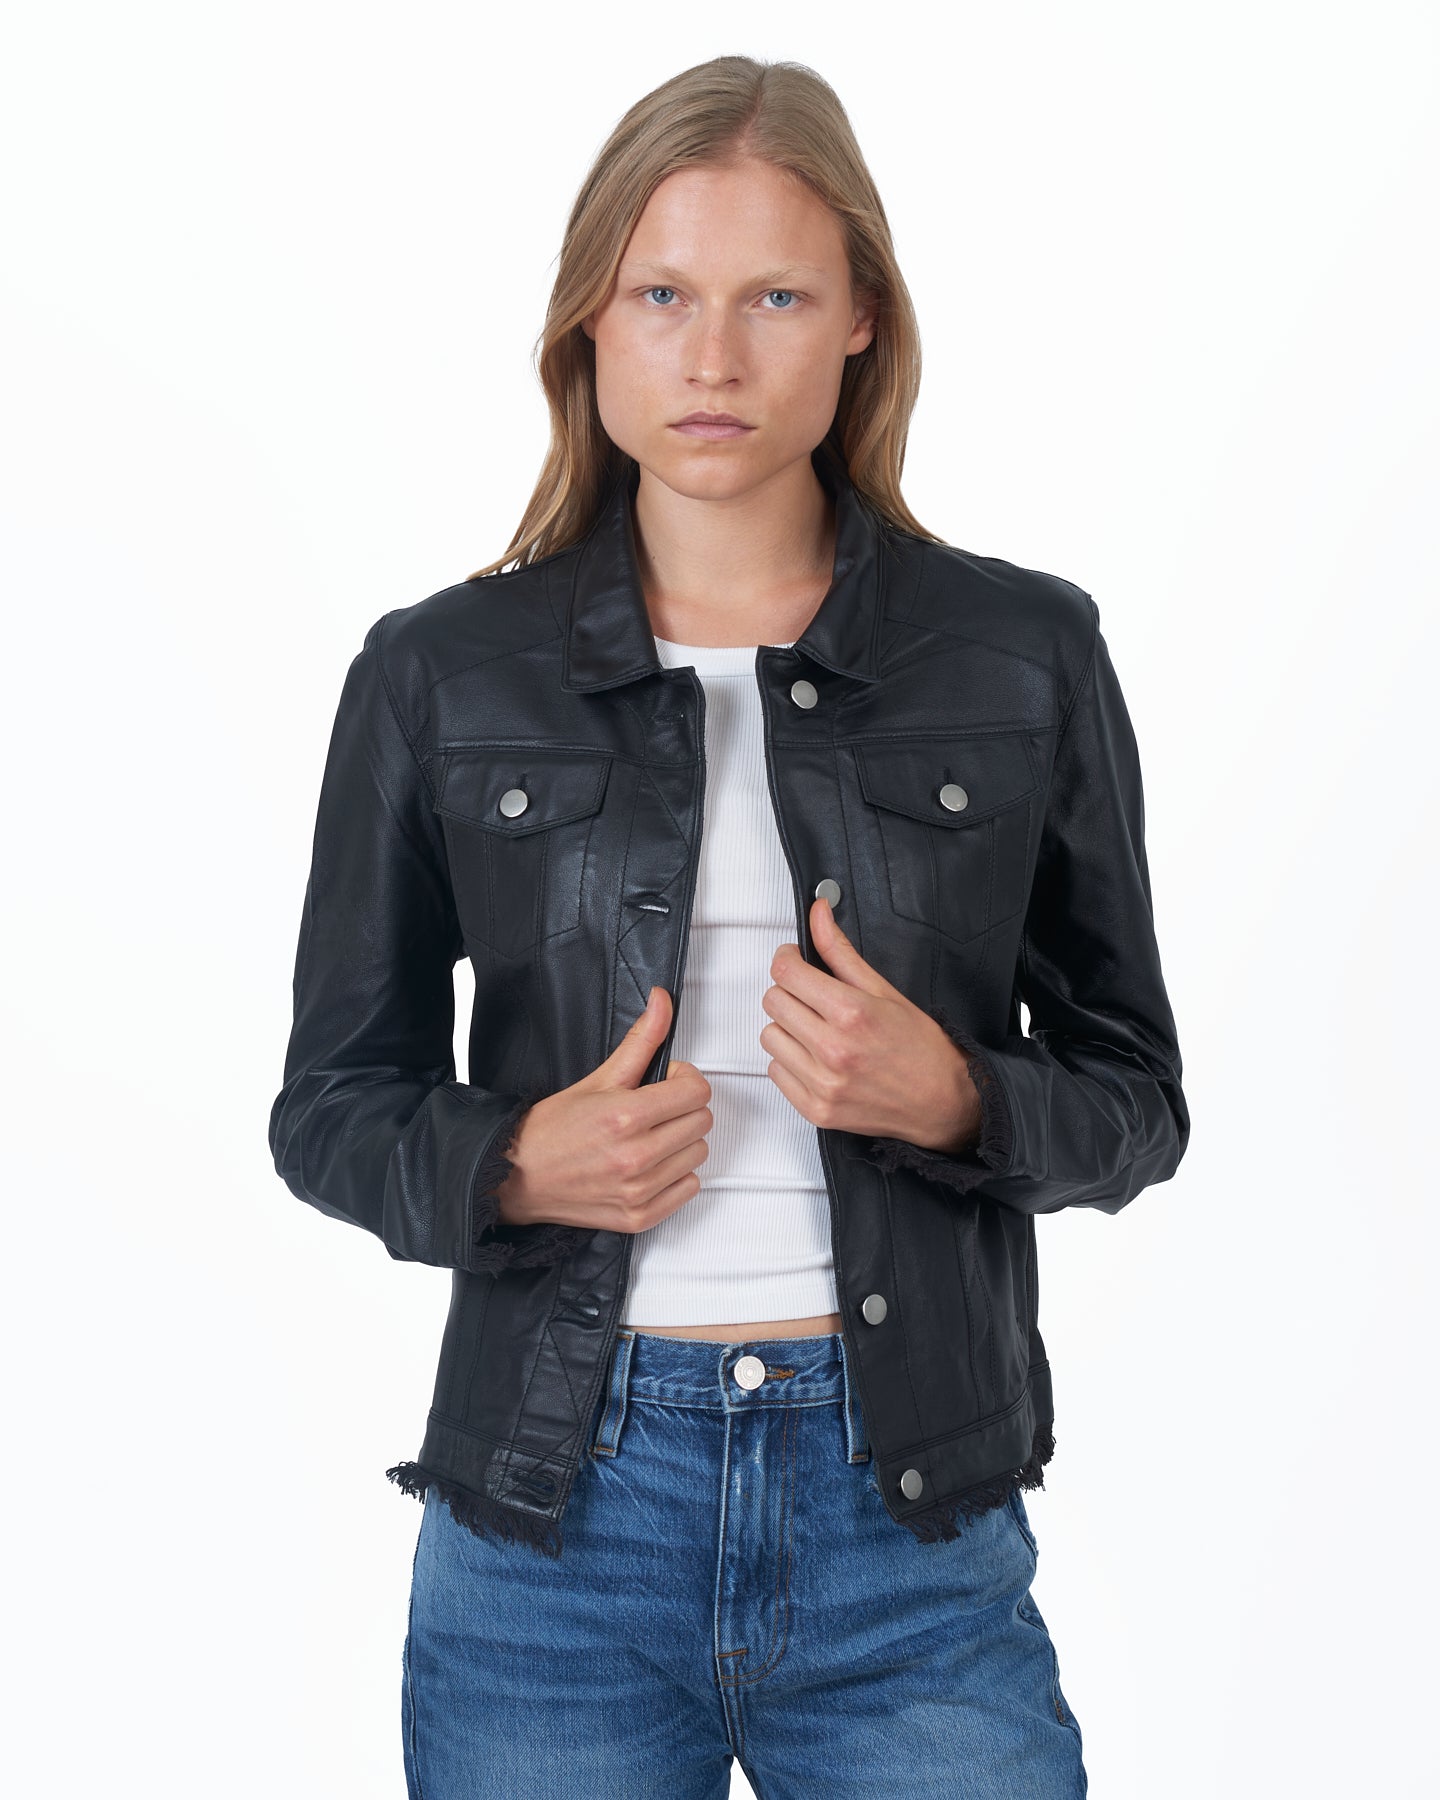 Alexa Burnished Leather Jacket Black